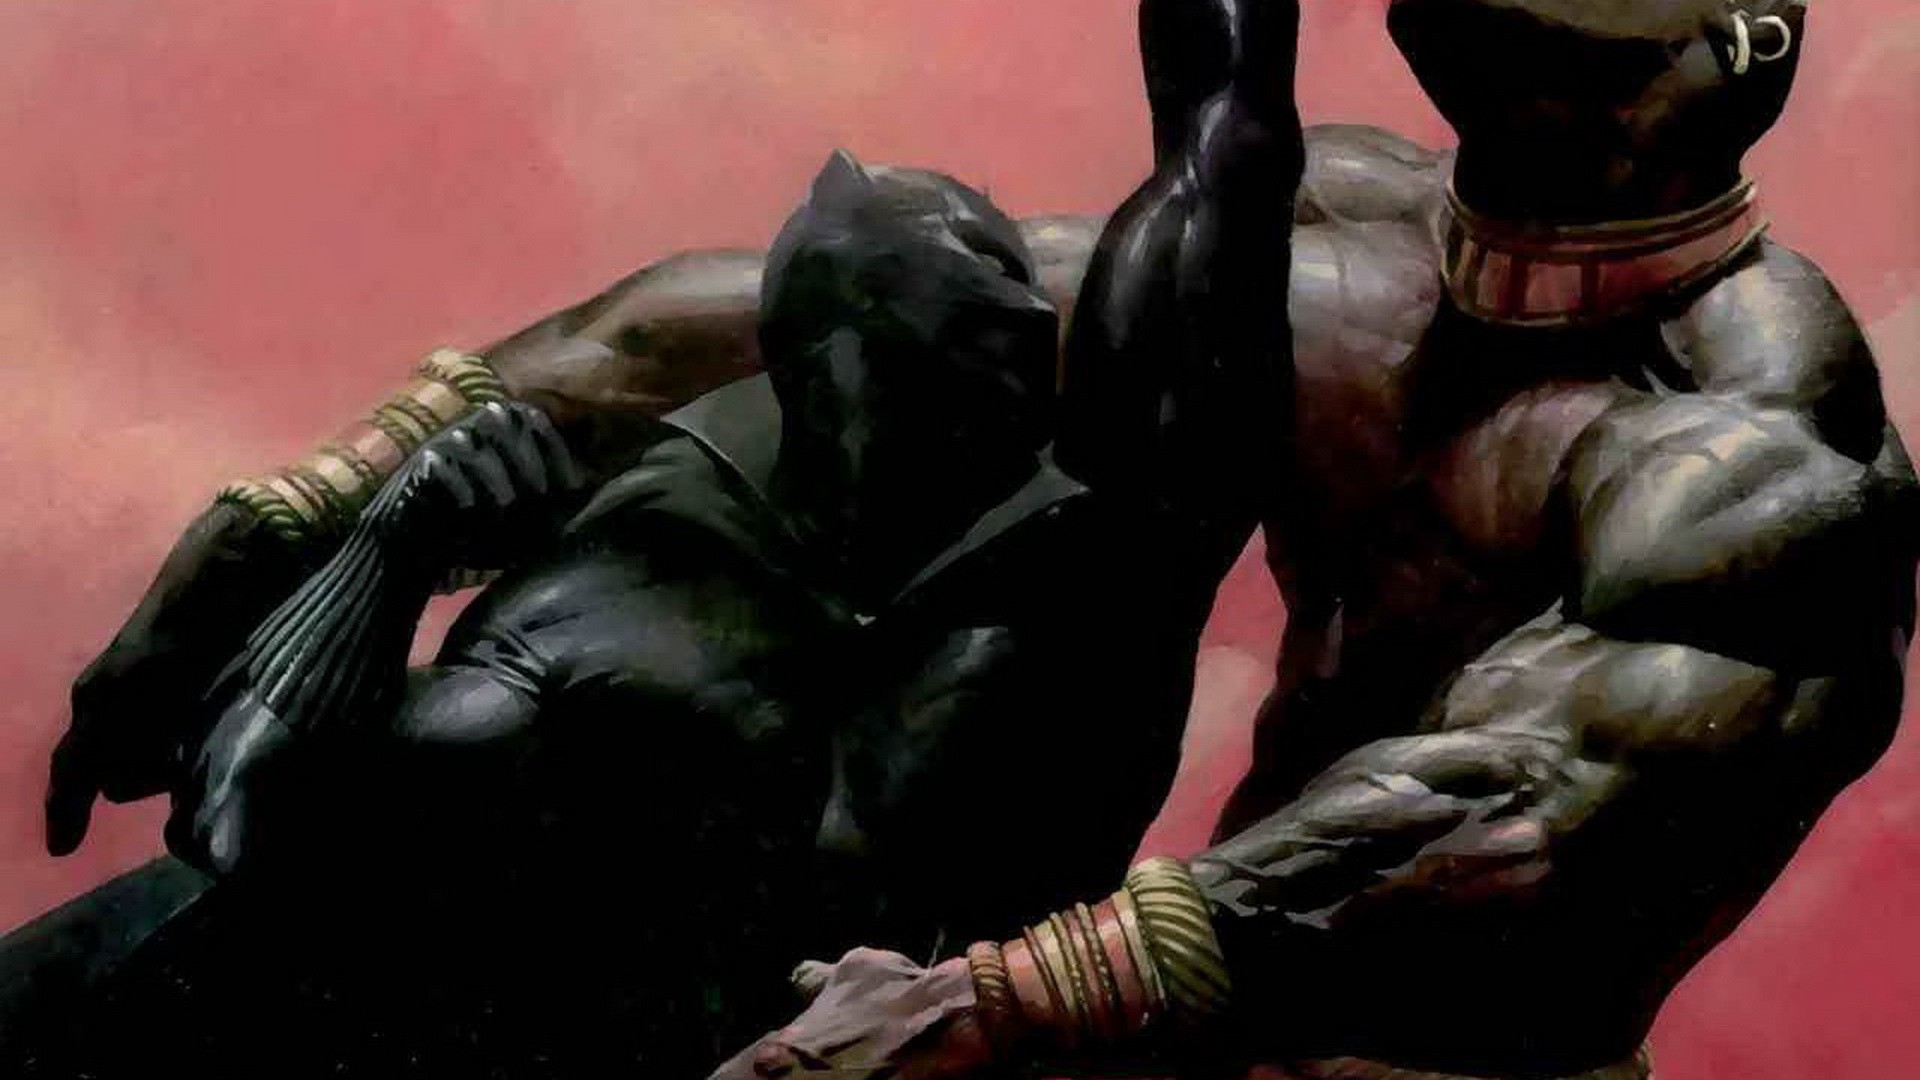 39+] Black Panther Marvel 1920x1080 Wallpaper - WallpaperSafari